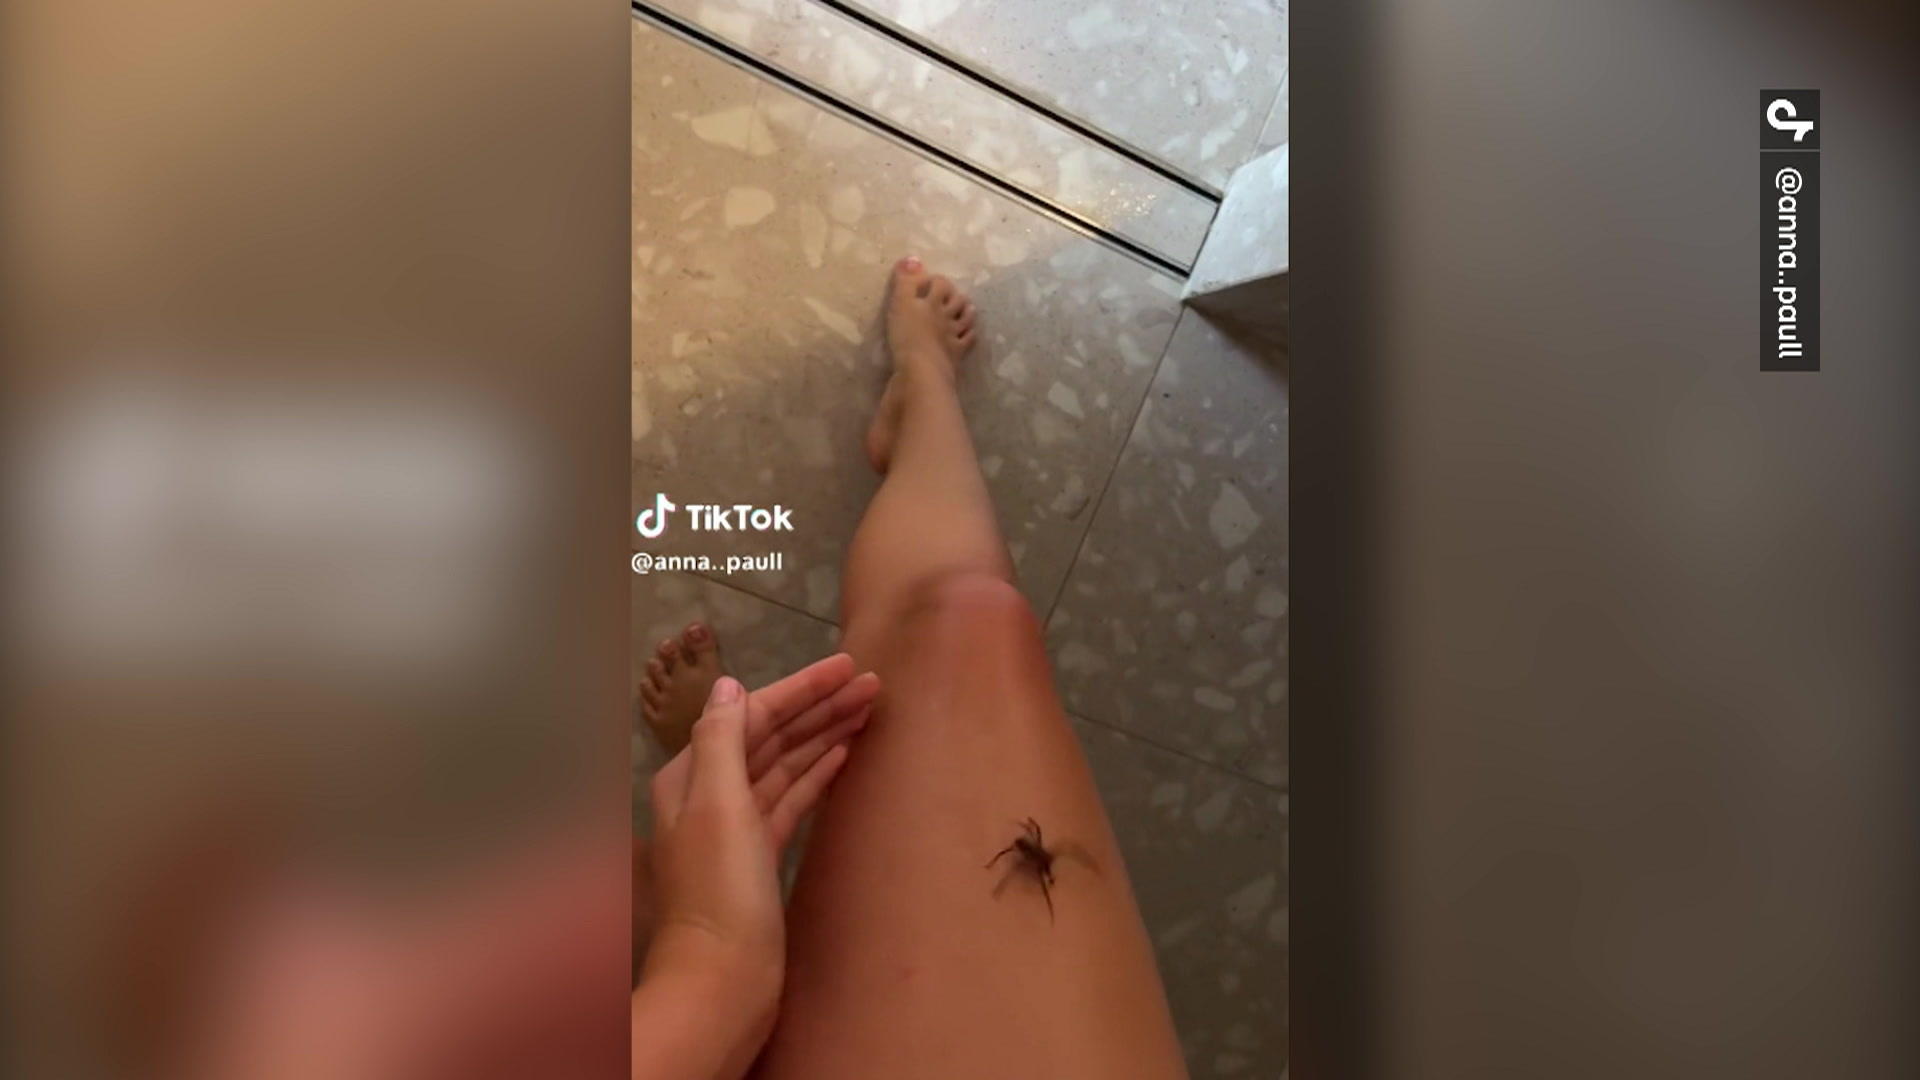 Spinne krabbelt auf TikTokerin - ihre Reaktion überrascht Gruseliger Besucher!